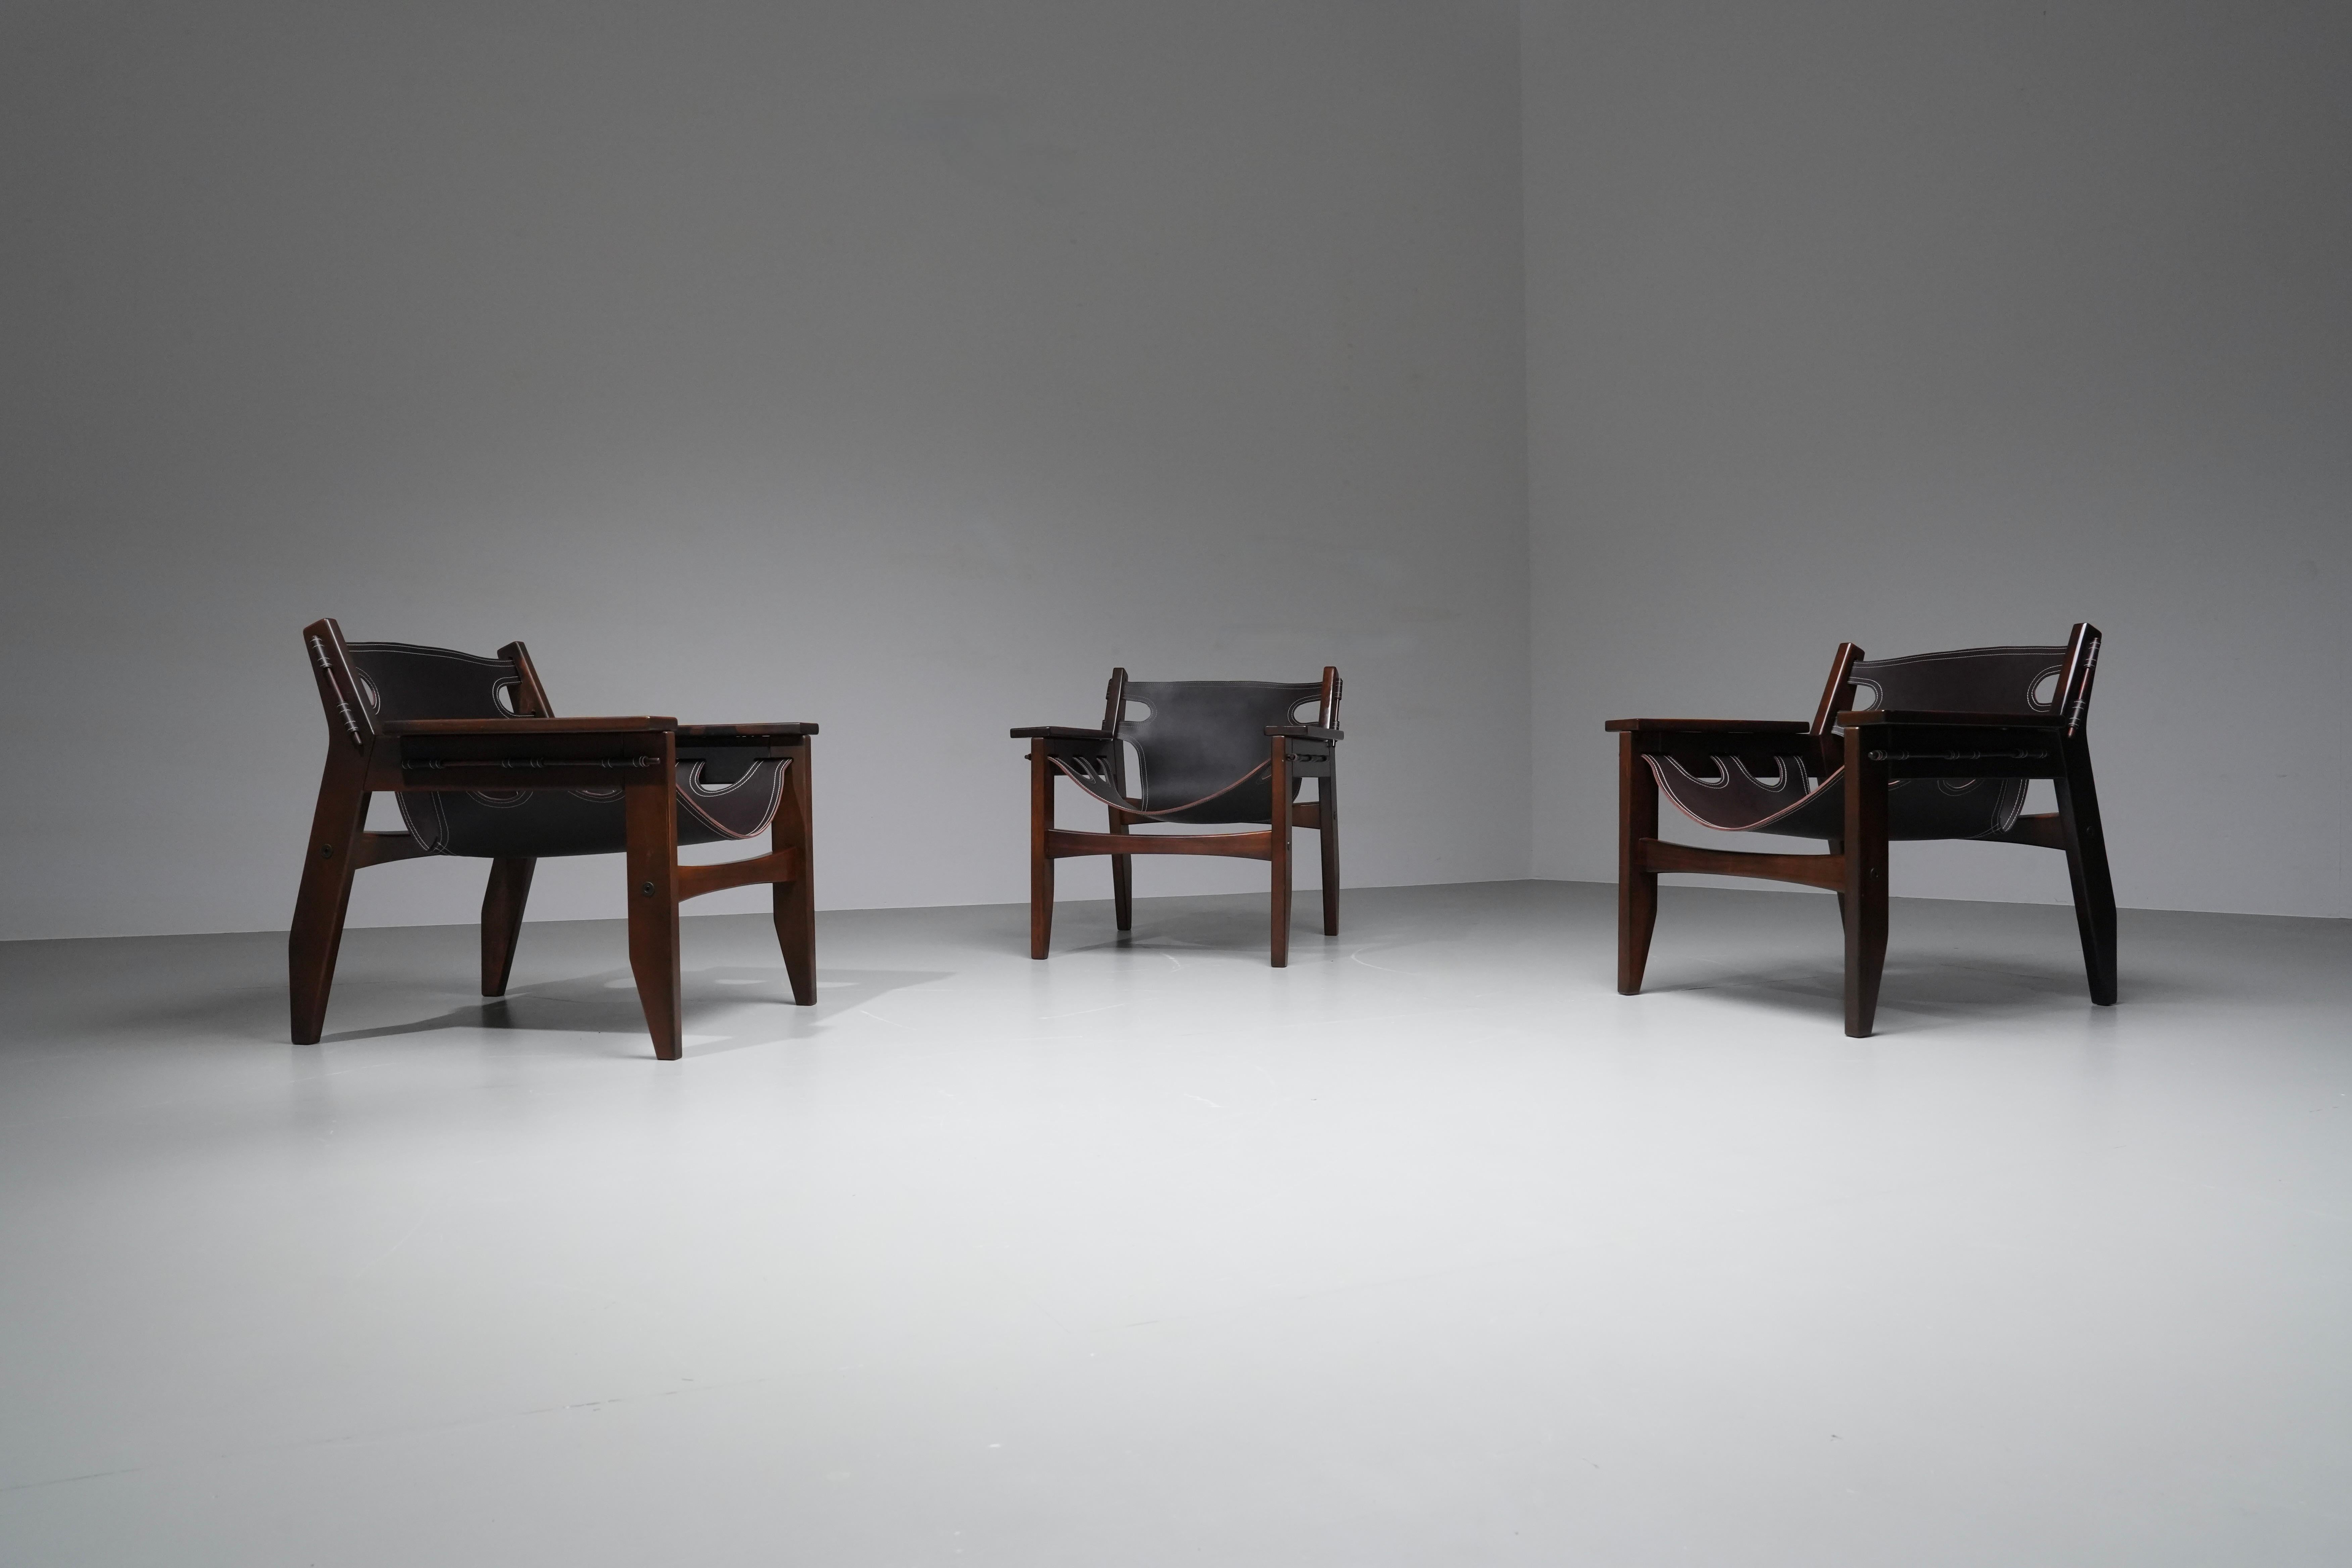 Exceptionnel ensemble de chaises Kilin de l'architecte brésilien Sergio Rodrigues. Fabriquées en bois sombre et en cuir de selle de haute qualité, ces chaises sont devenues véritablement emblématiques au fil des ans. Les espaces ouverts dans le cuir